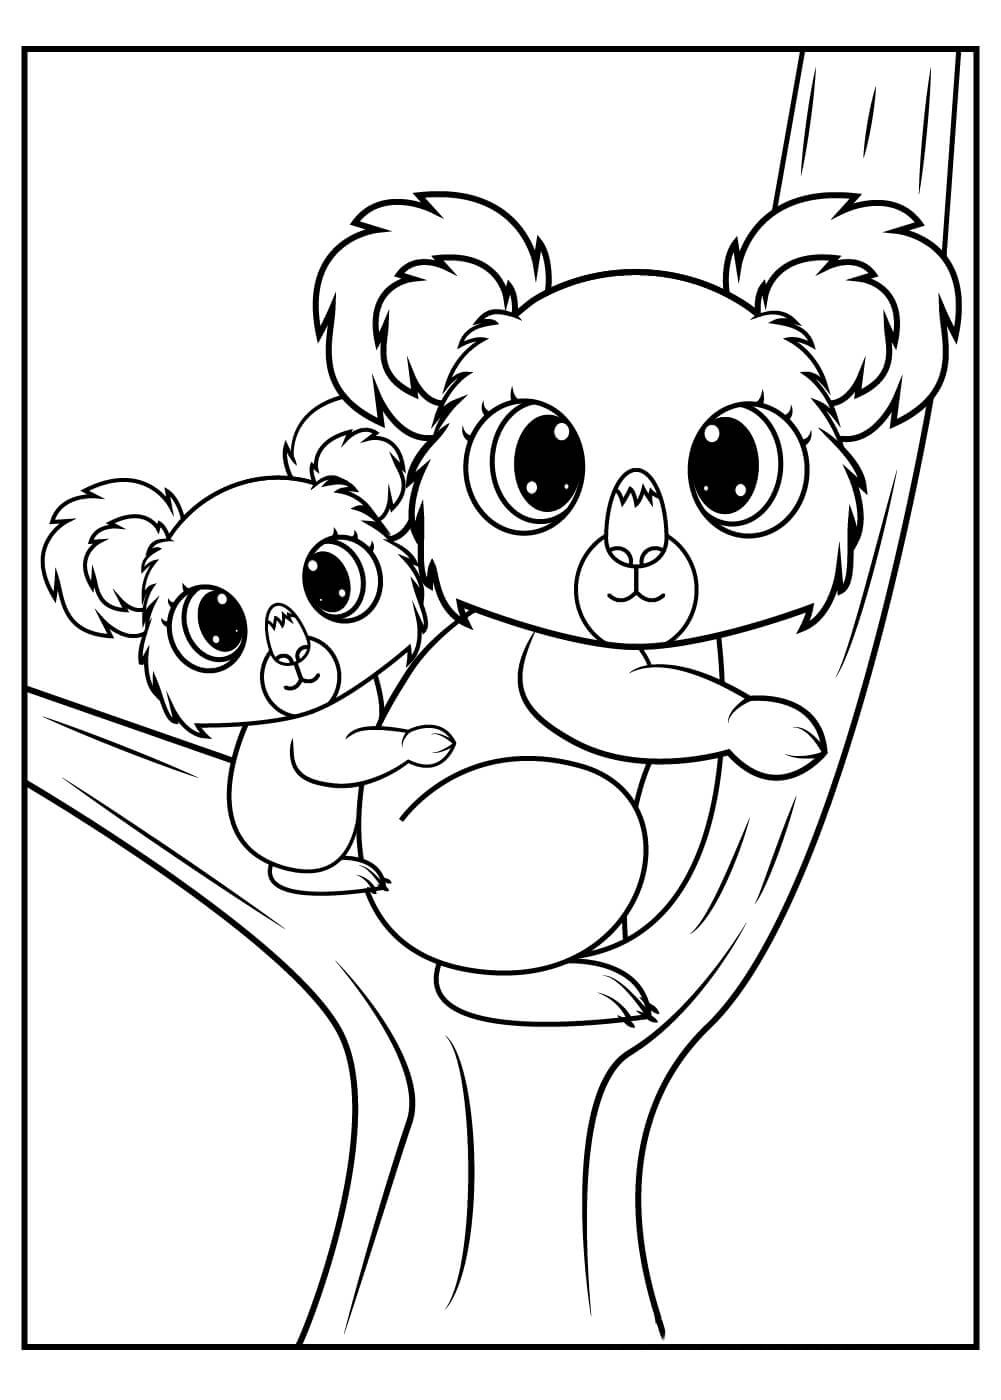 Irmão Koala com o bebê Koala para colorir